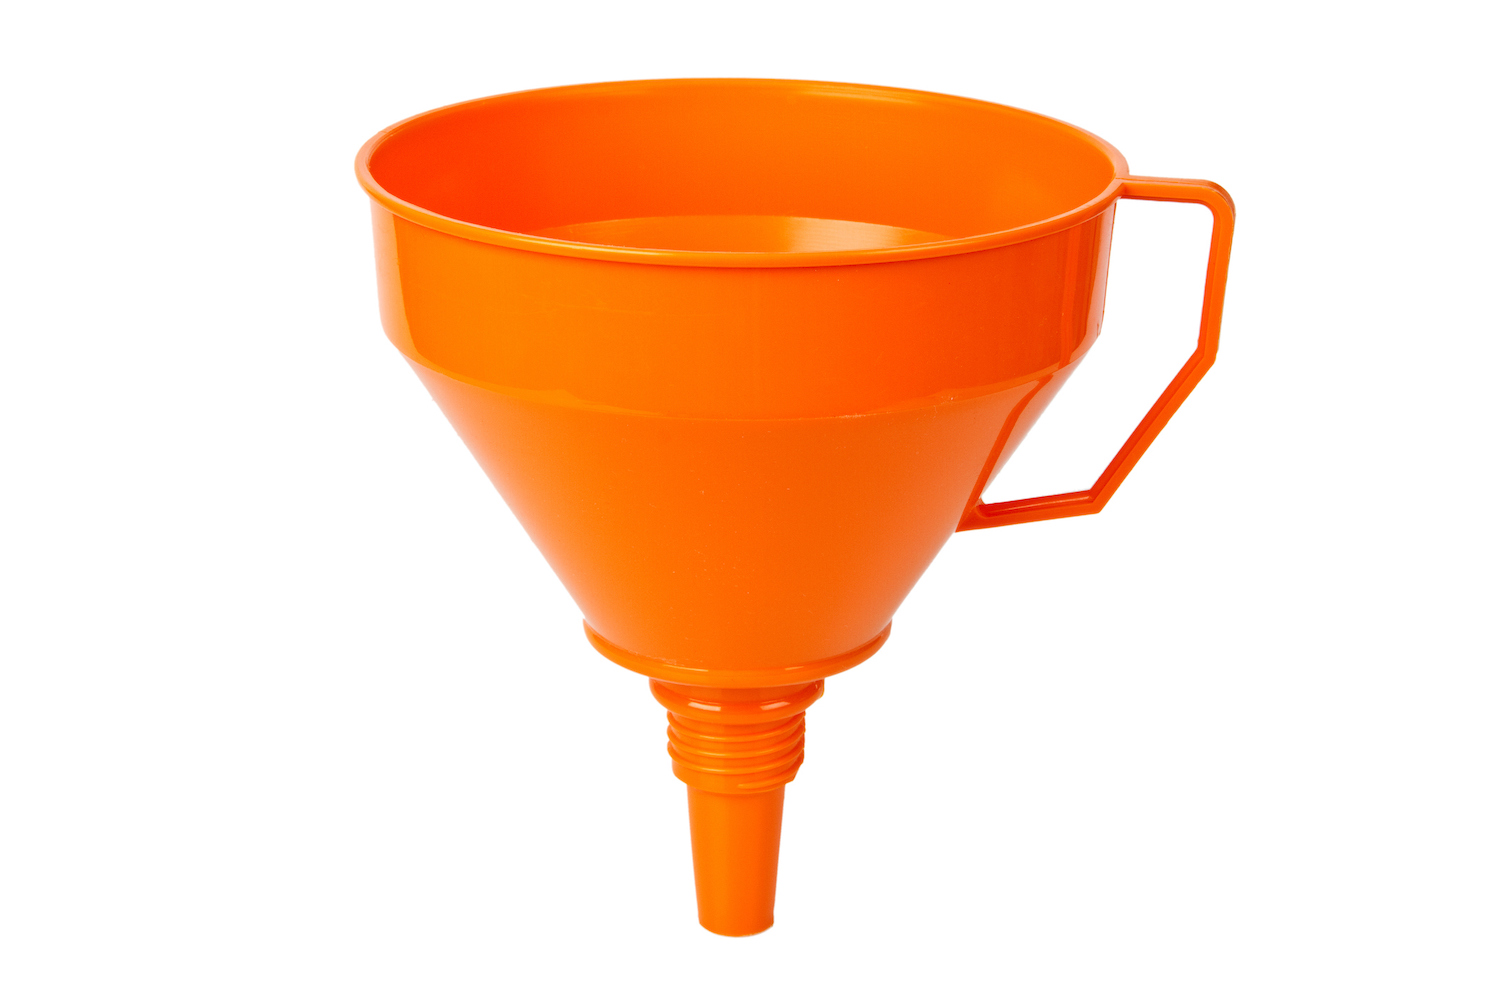 Orange funnel on light background